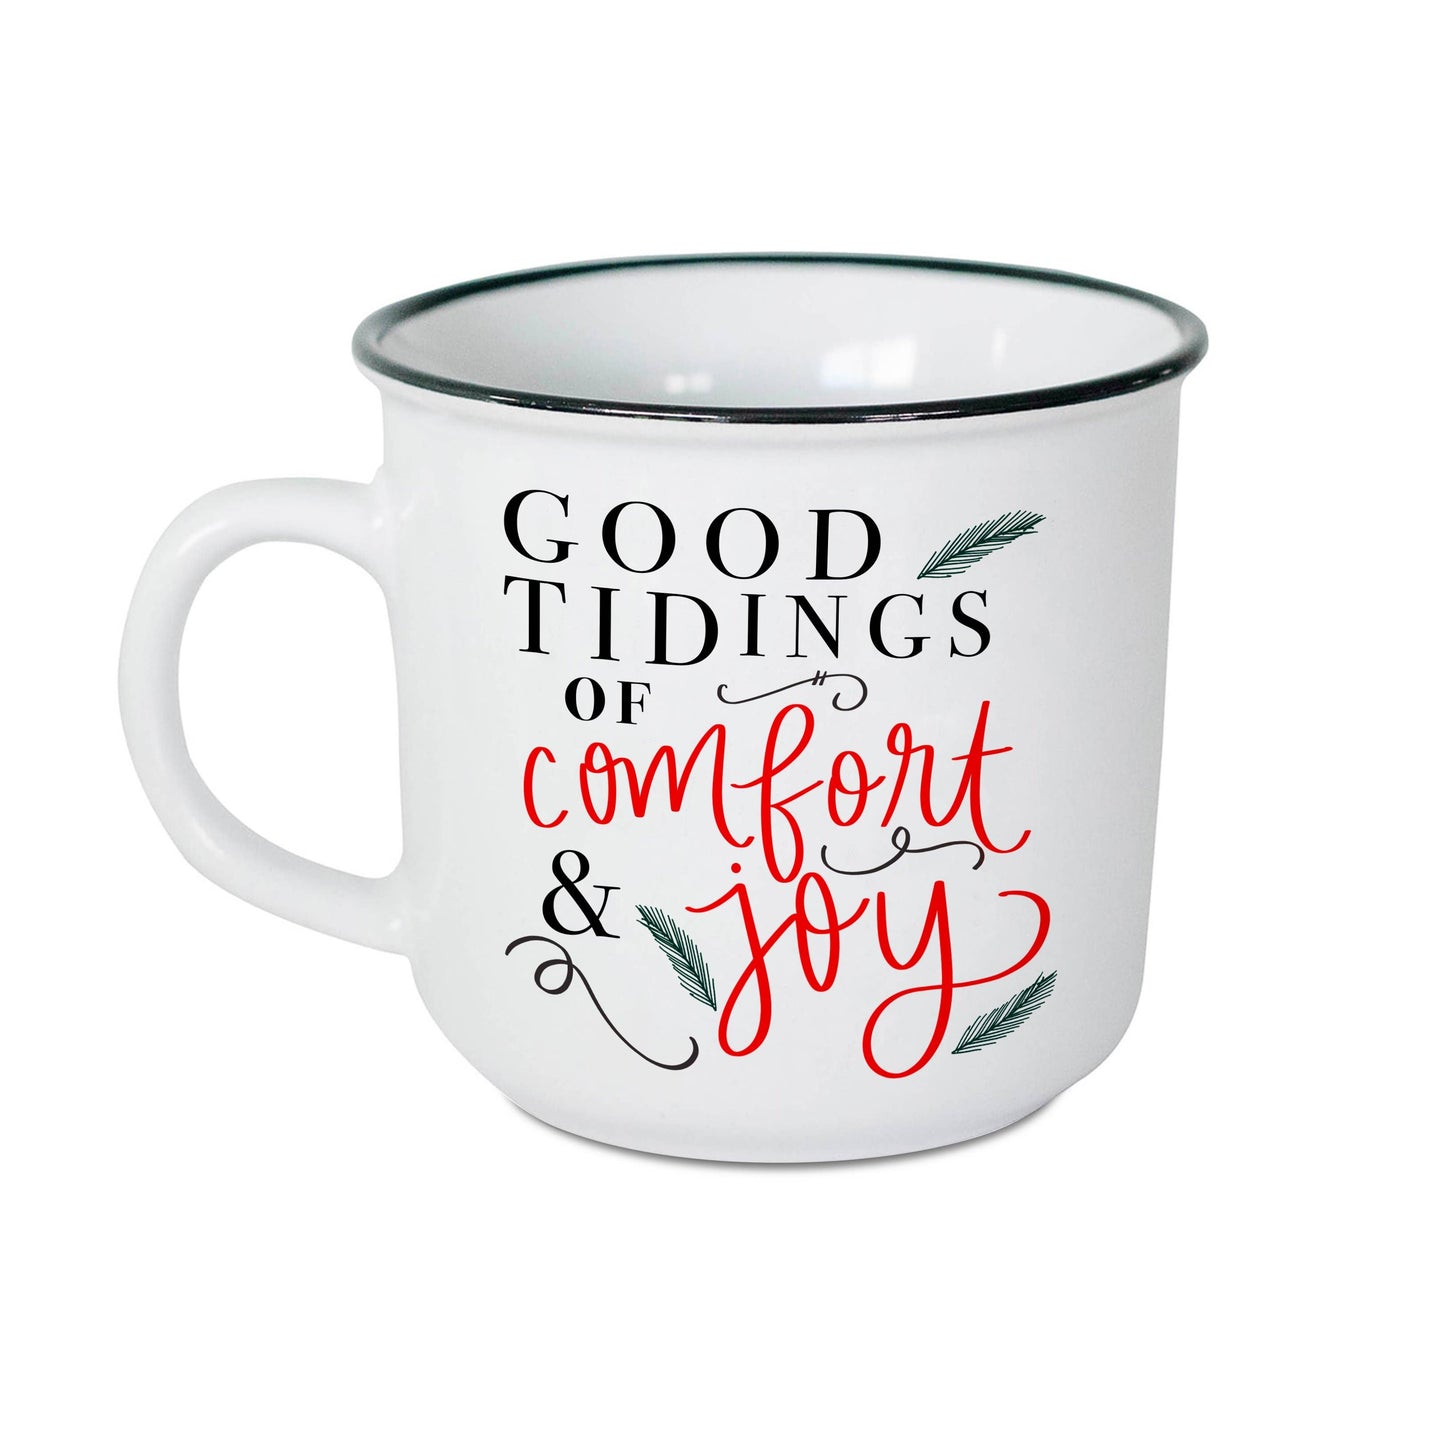 Good Tidings Coffee Mug - Christmas Home Decor & Gifts